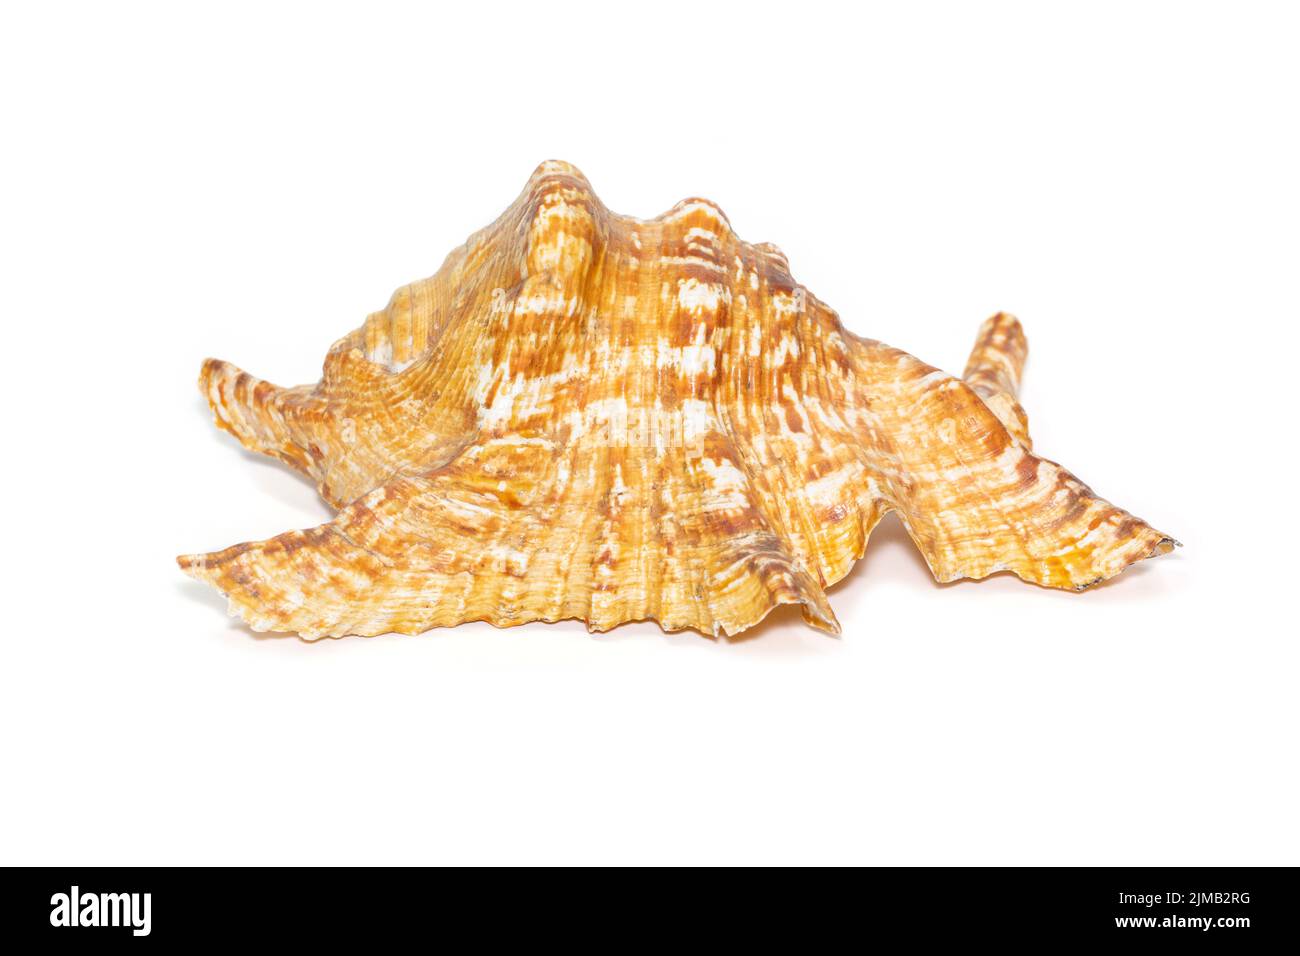 Immagine della conchiglia di mare lambis truncata sowerbyi su sfondo bianco. Conchiglie marine. Animali sottomarini. Foto Stock